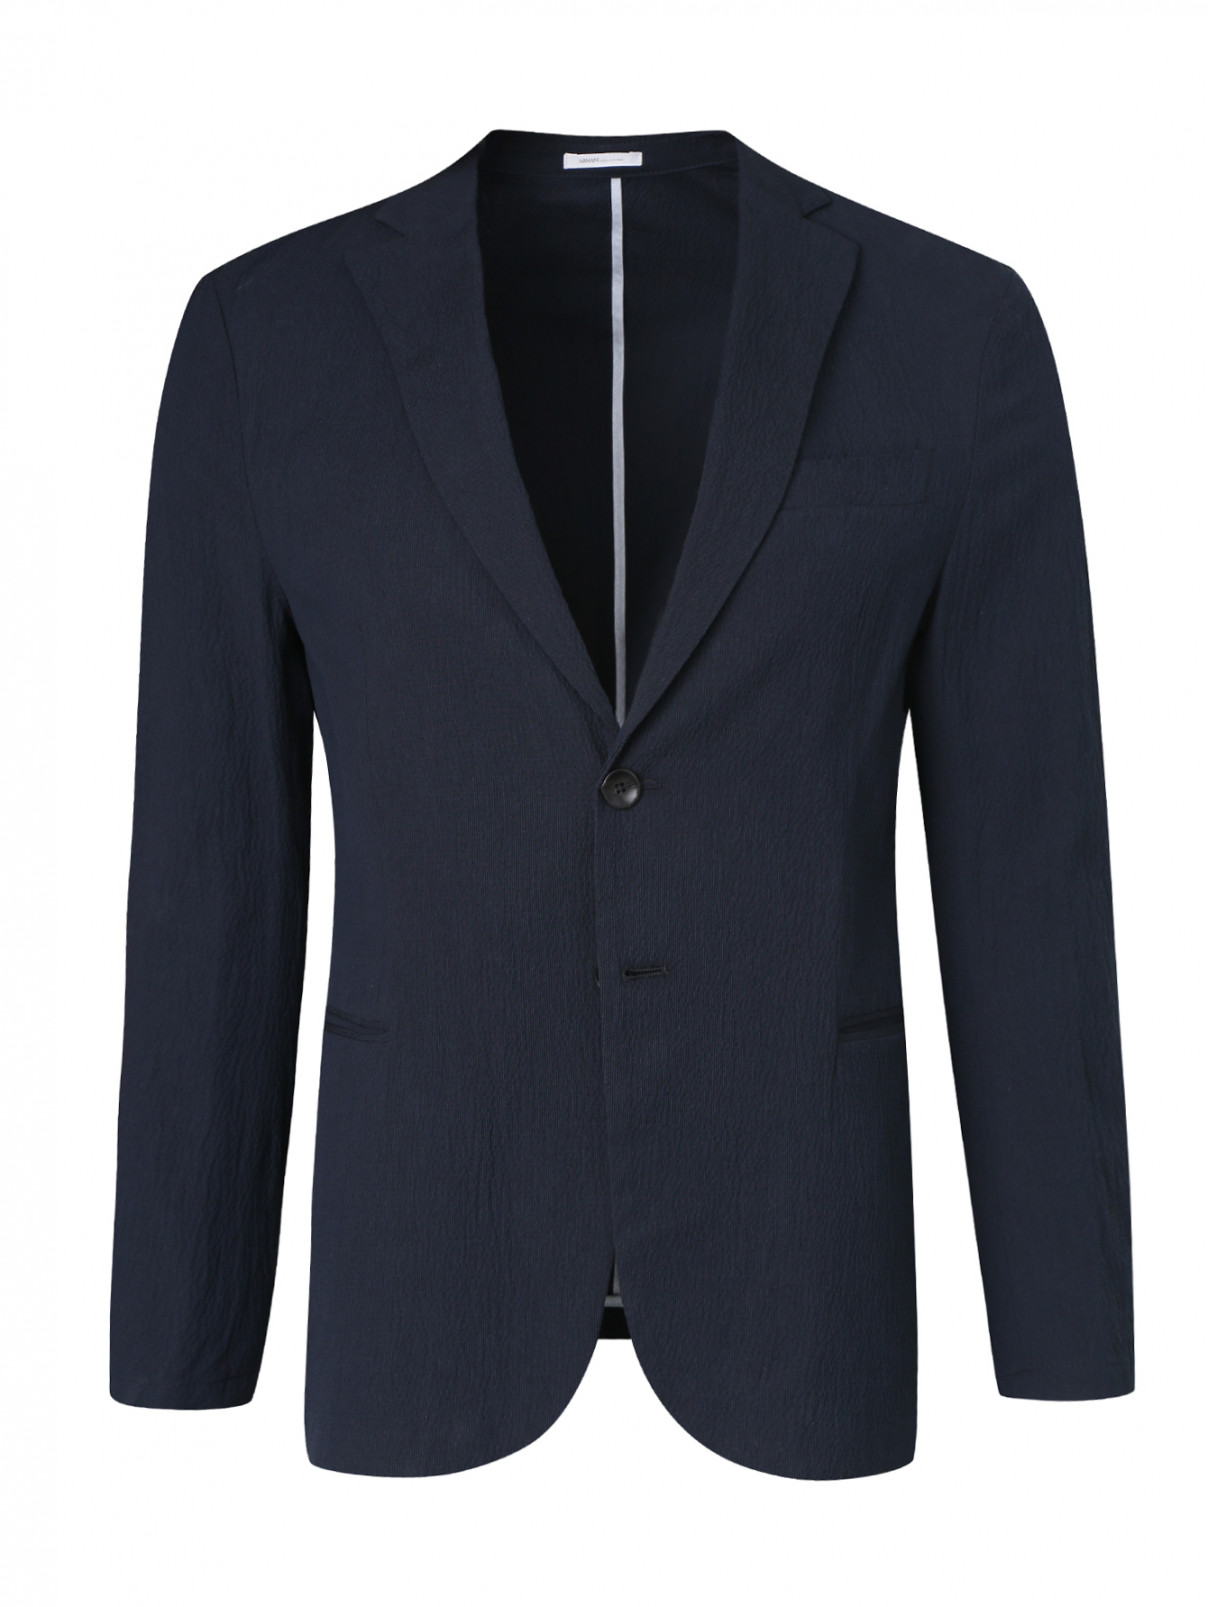 Пиджак из хлопка Armani Collezioni  –  Общий вид  – Цвет:  Синий